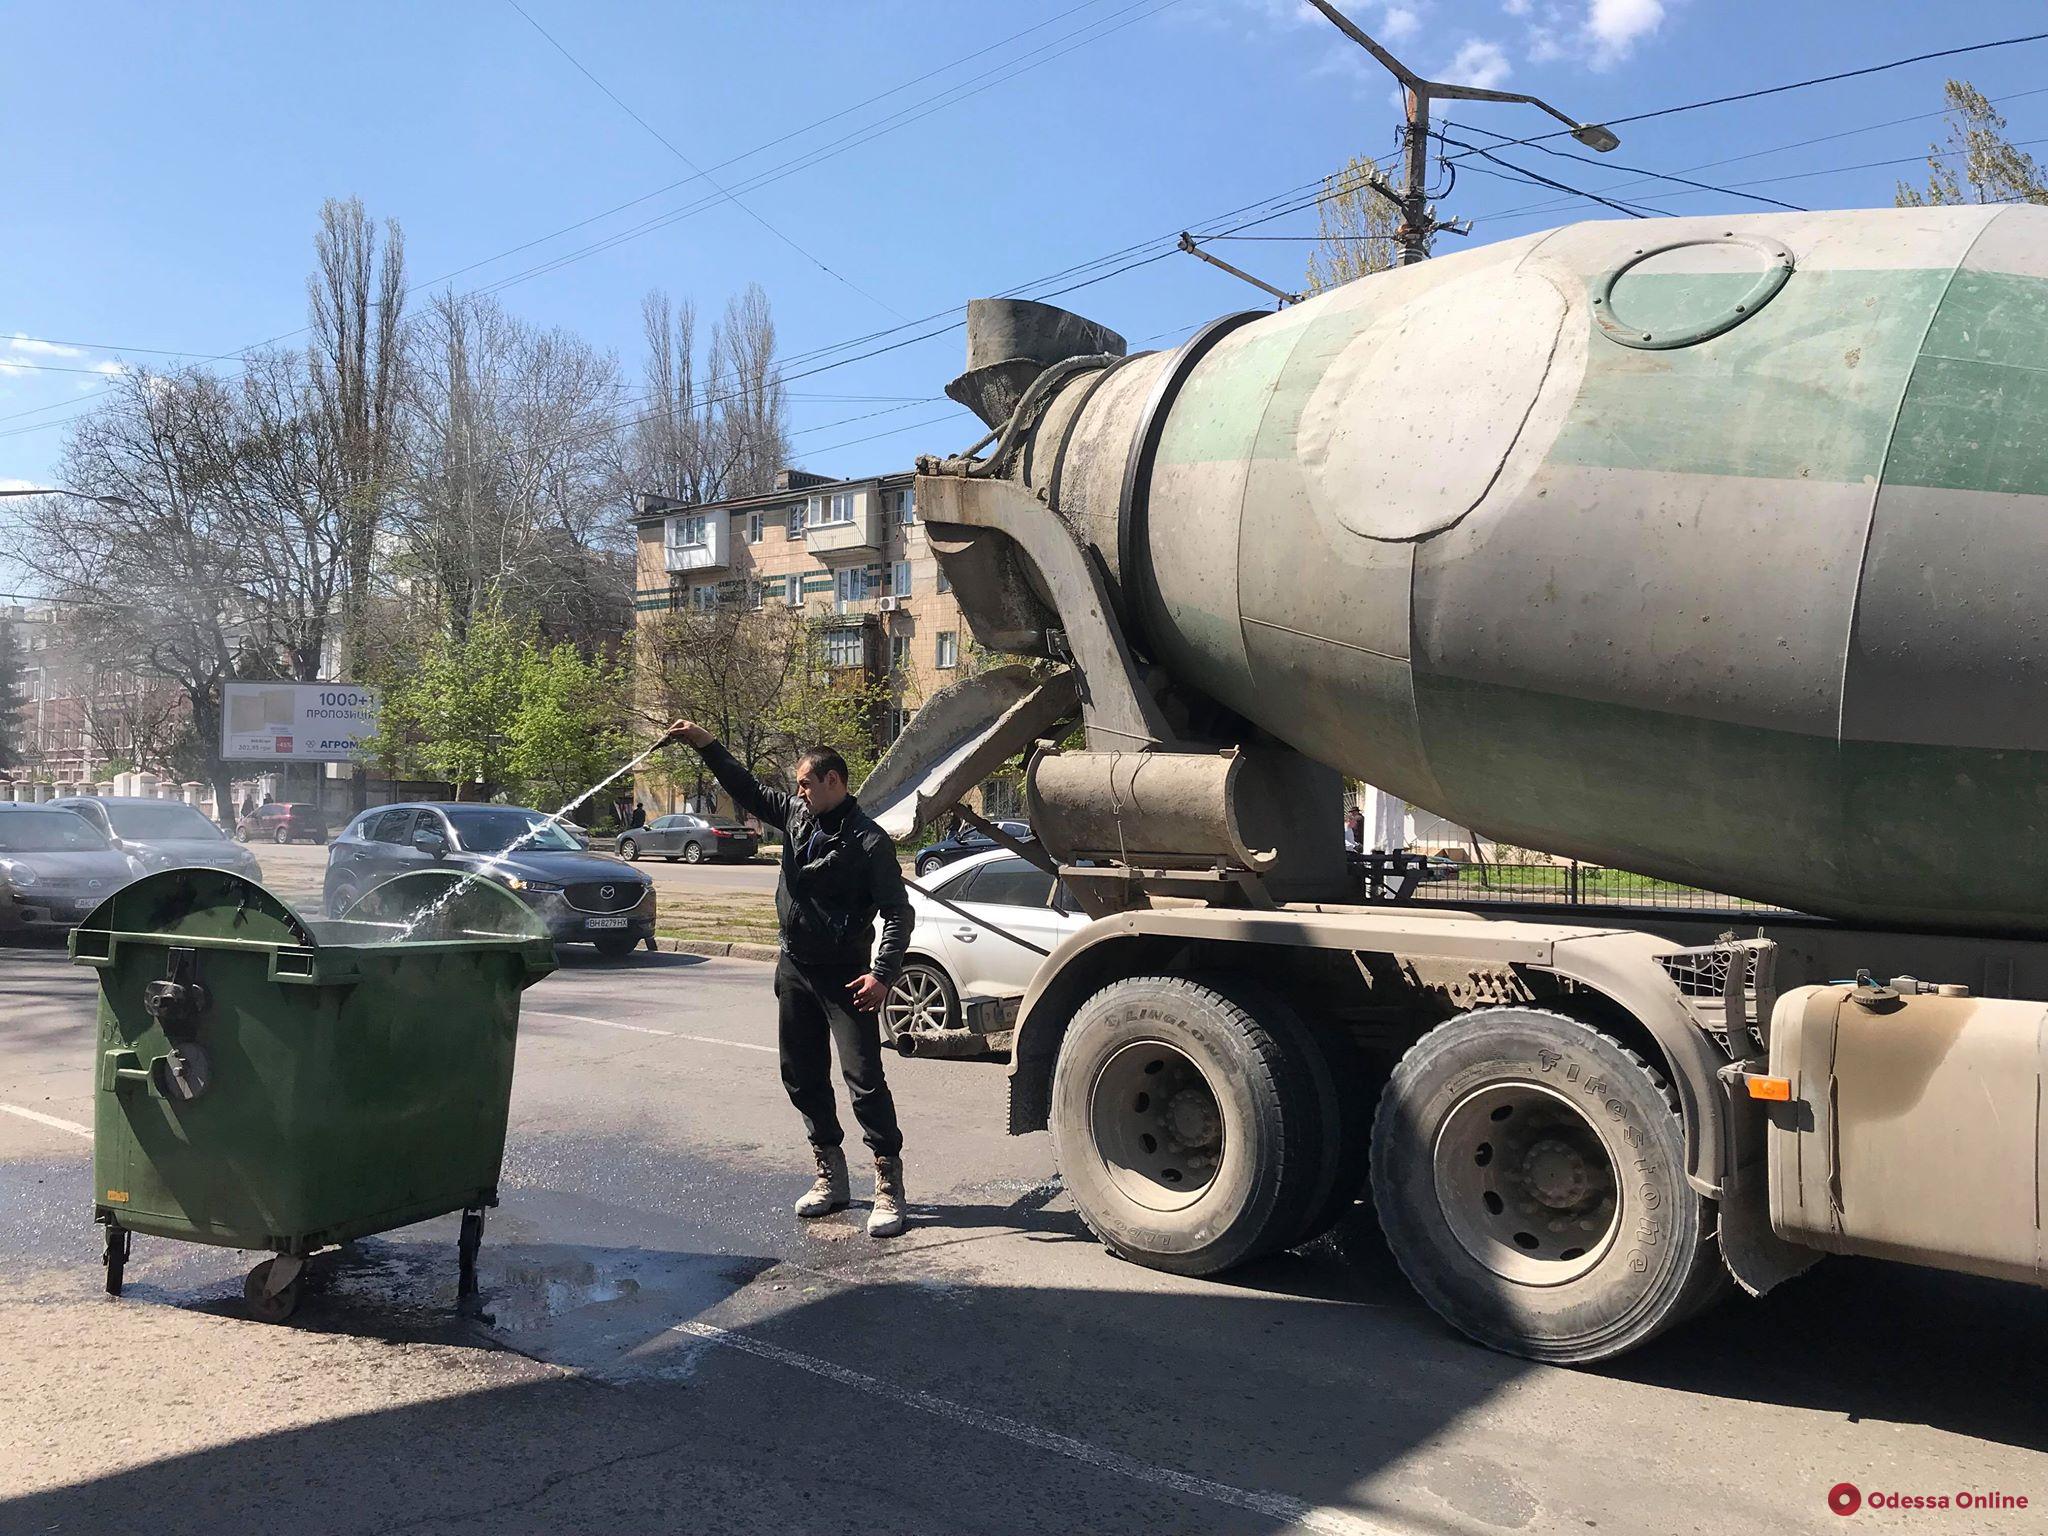 Одесса: курьер-мопедист и водитель бетономешалки сообща потушили мусорный бак (фотофакт)